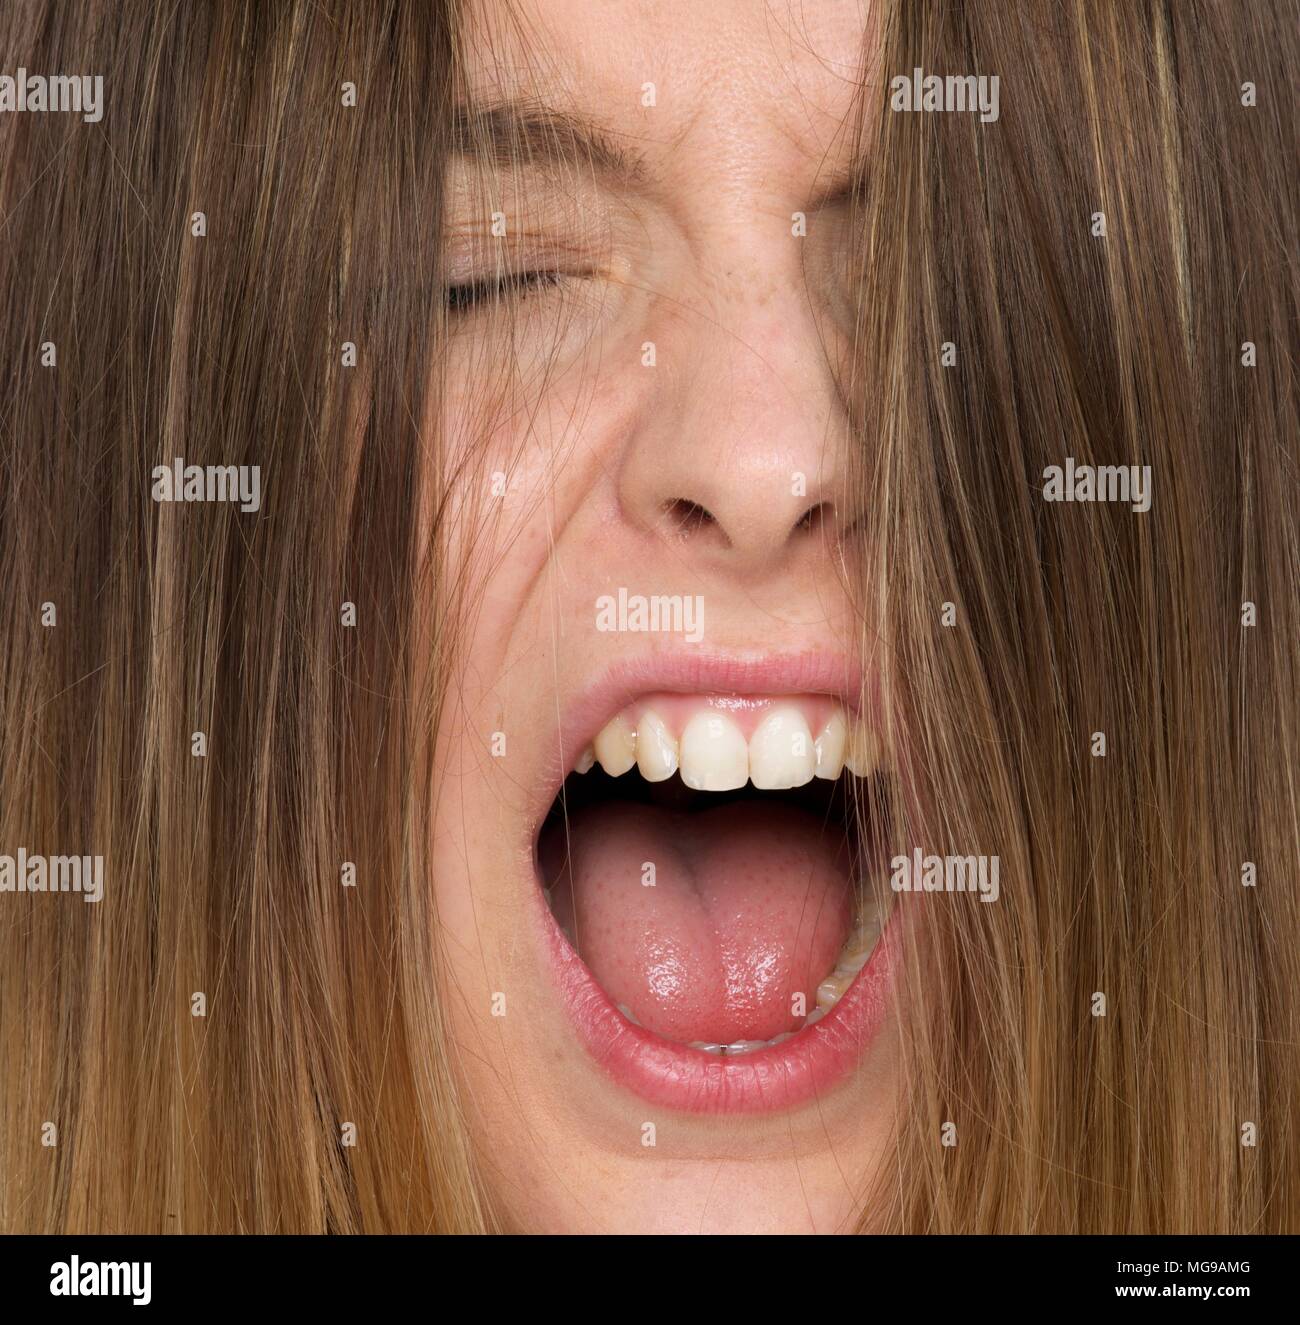 Mujer joven gritando con la boca abierta. Foto de stock